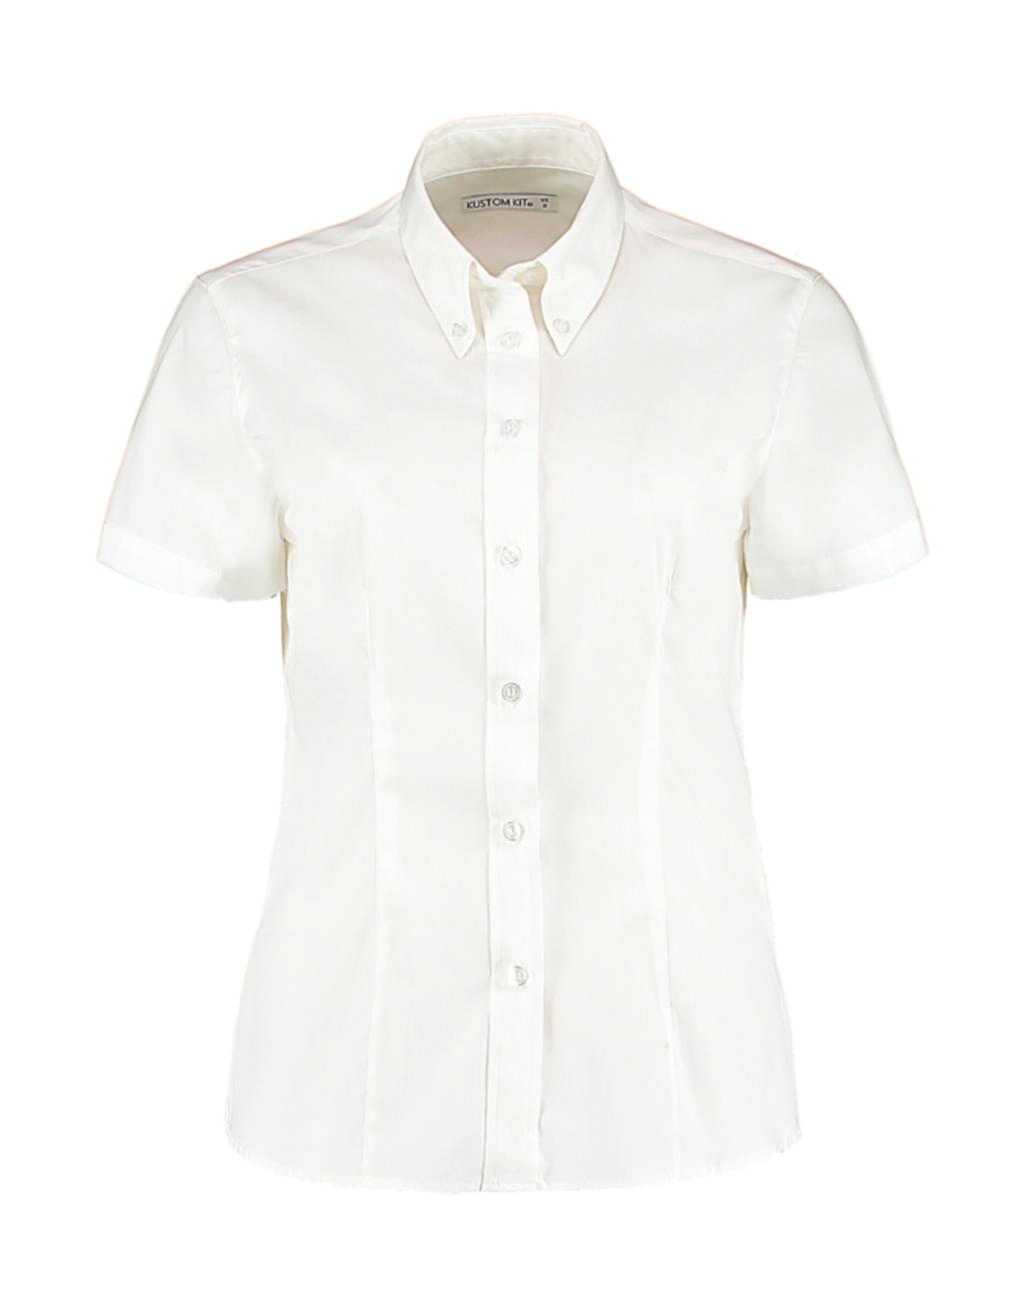 Women`s Tailored Fit Premium Oxford Shirt SSL zum Besticken und Bedrucken in der Farbe White mit Ihren Logo, Schriftzug oder Motiv.